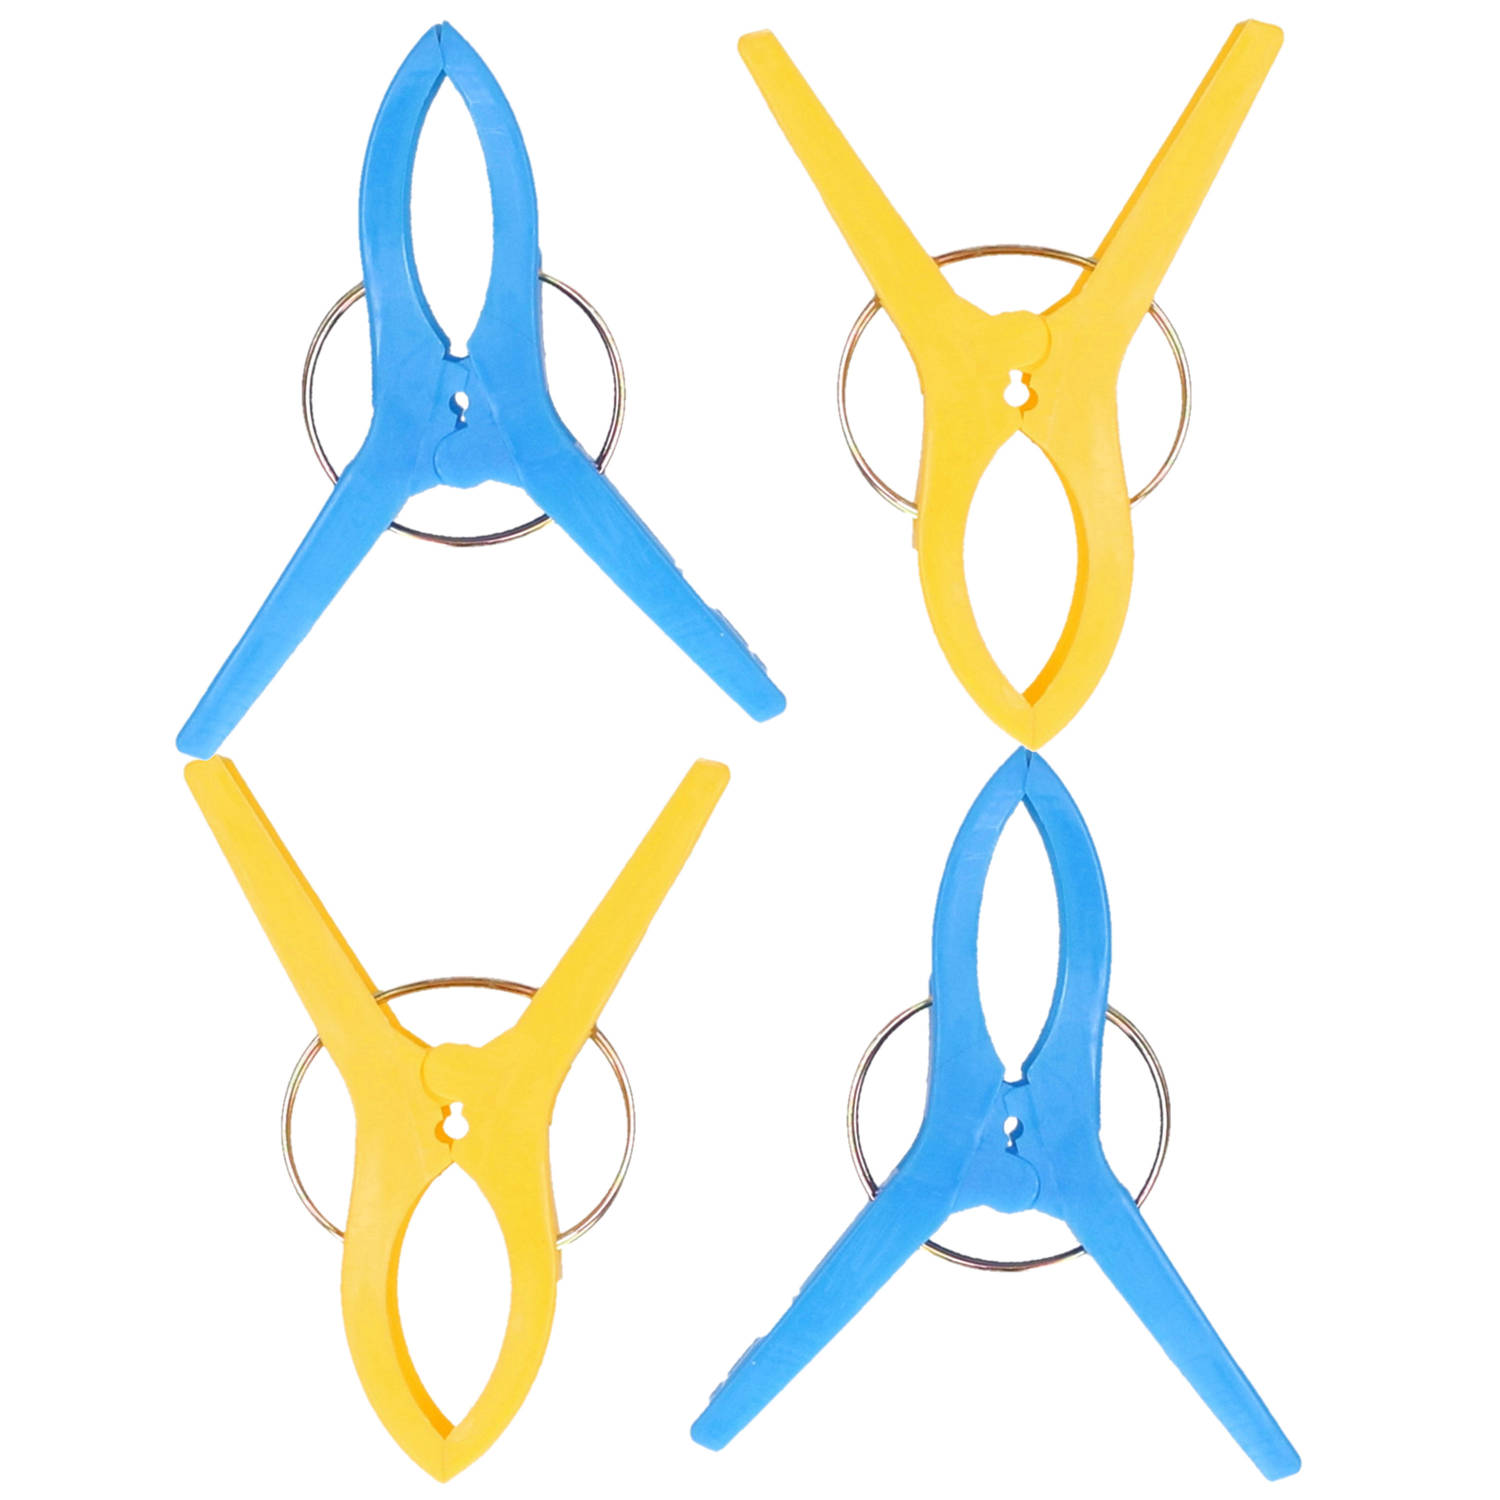 Jedermann Handdoekknijpers XL - 4x - blauw/geel - kunststof - 12 cm - Handdoekknijpers